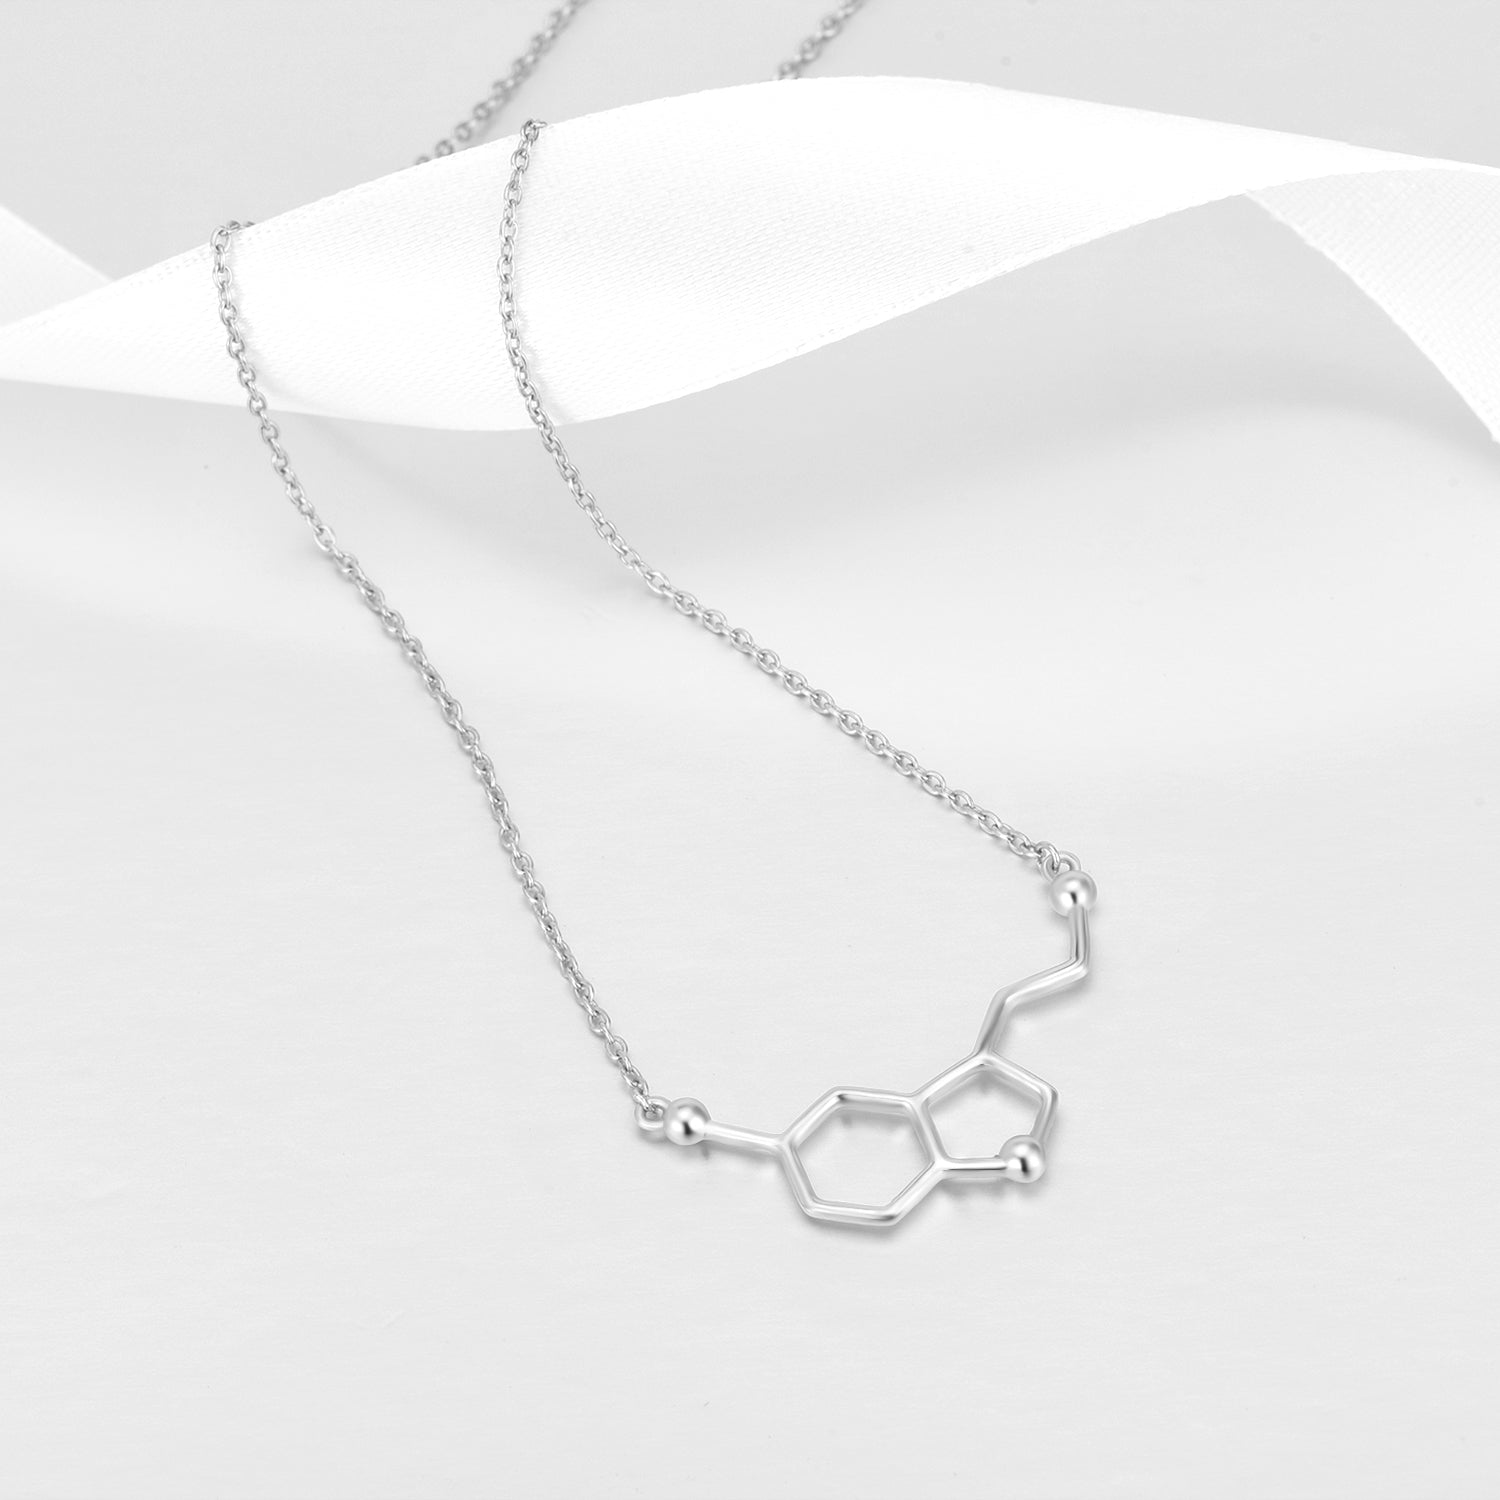 Wholesale Women Chain Online Shop Top Seller New Design Necklace